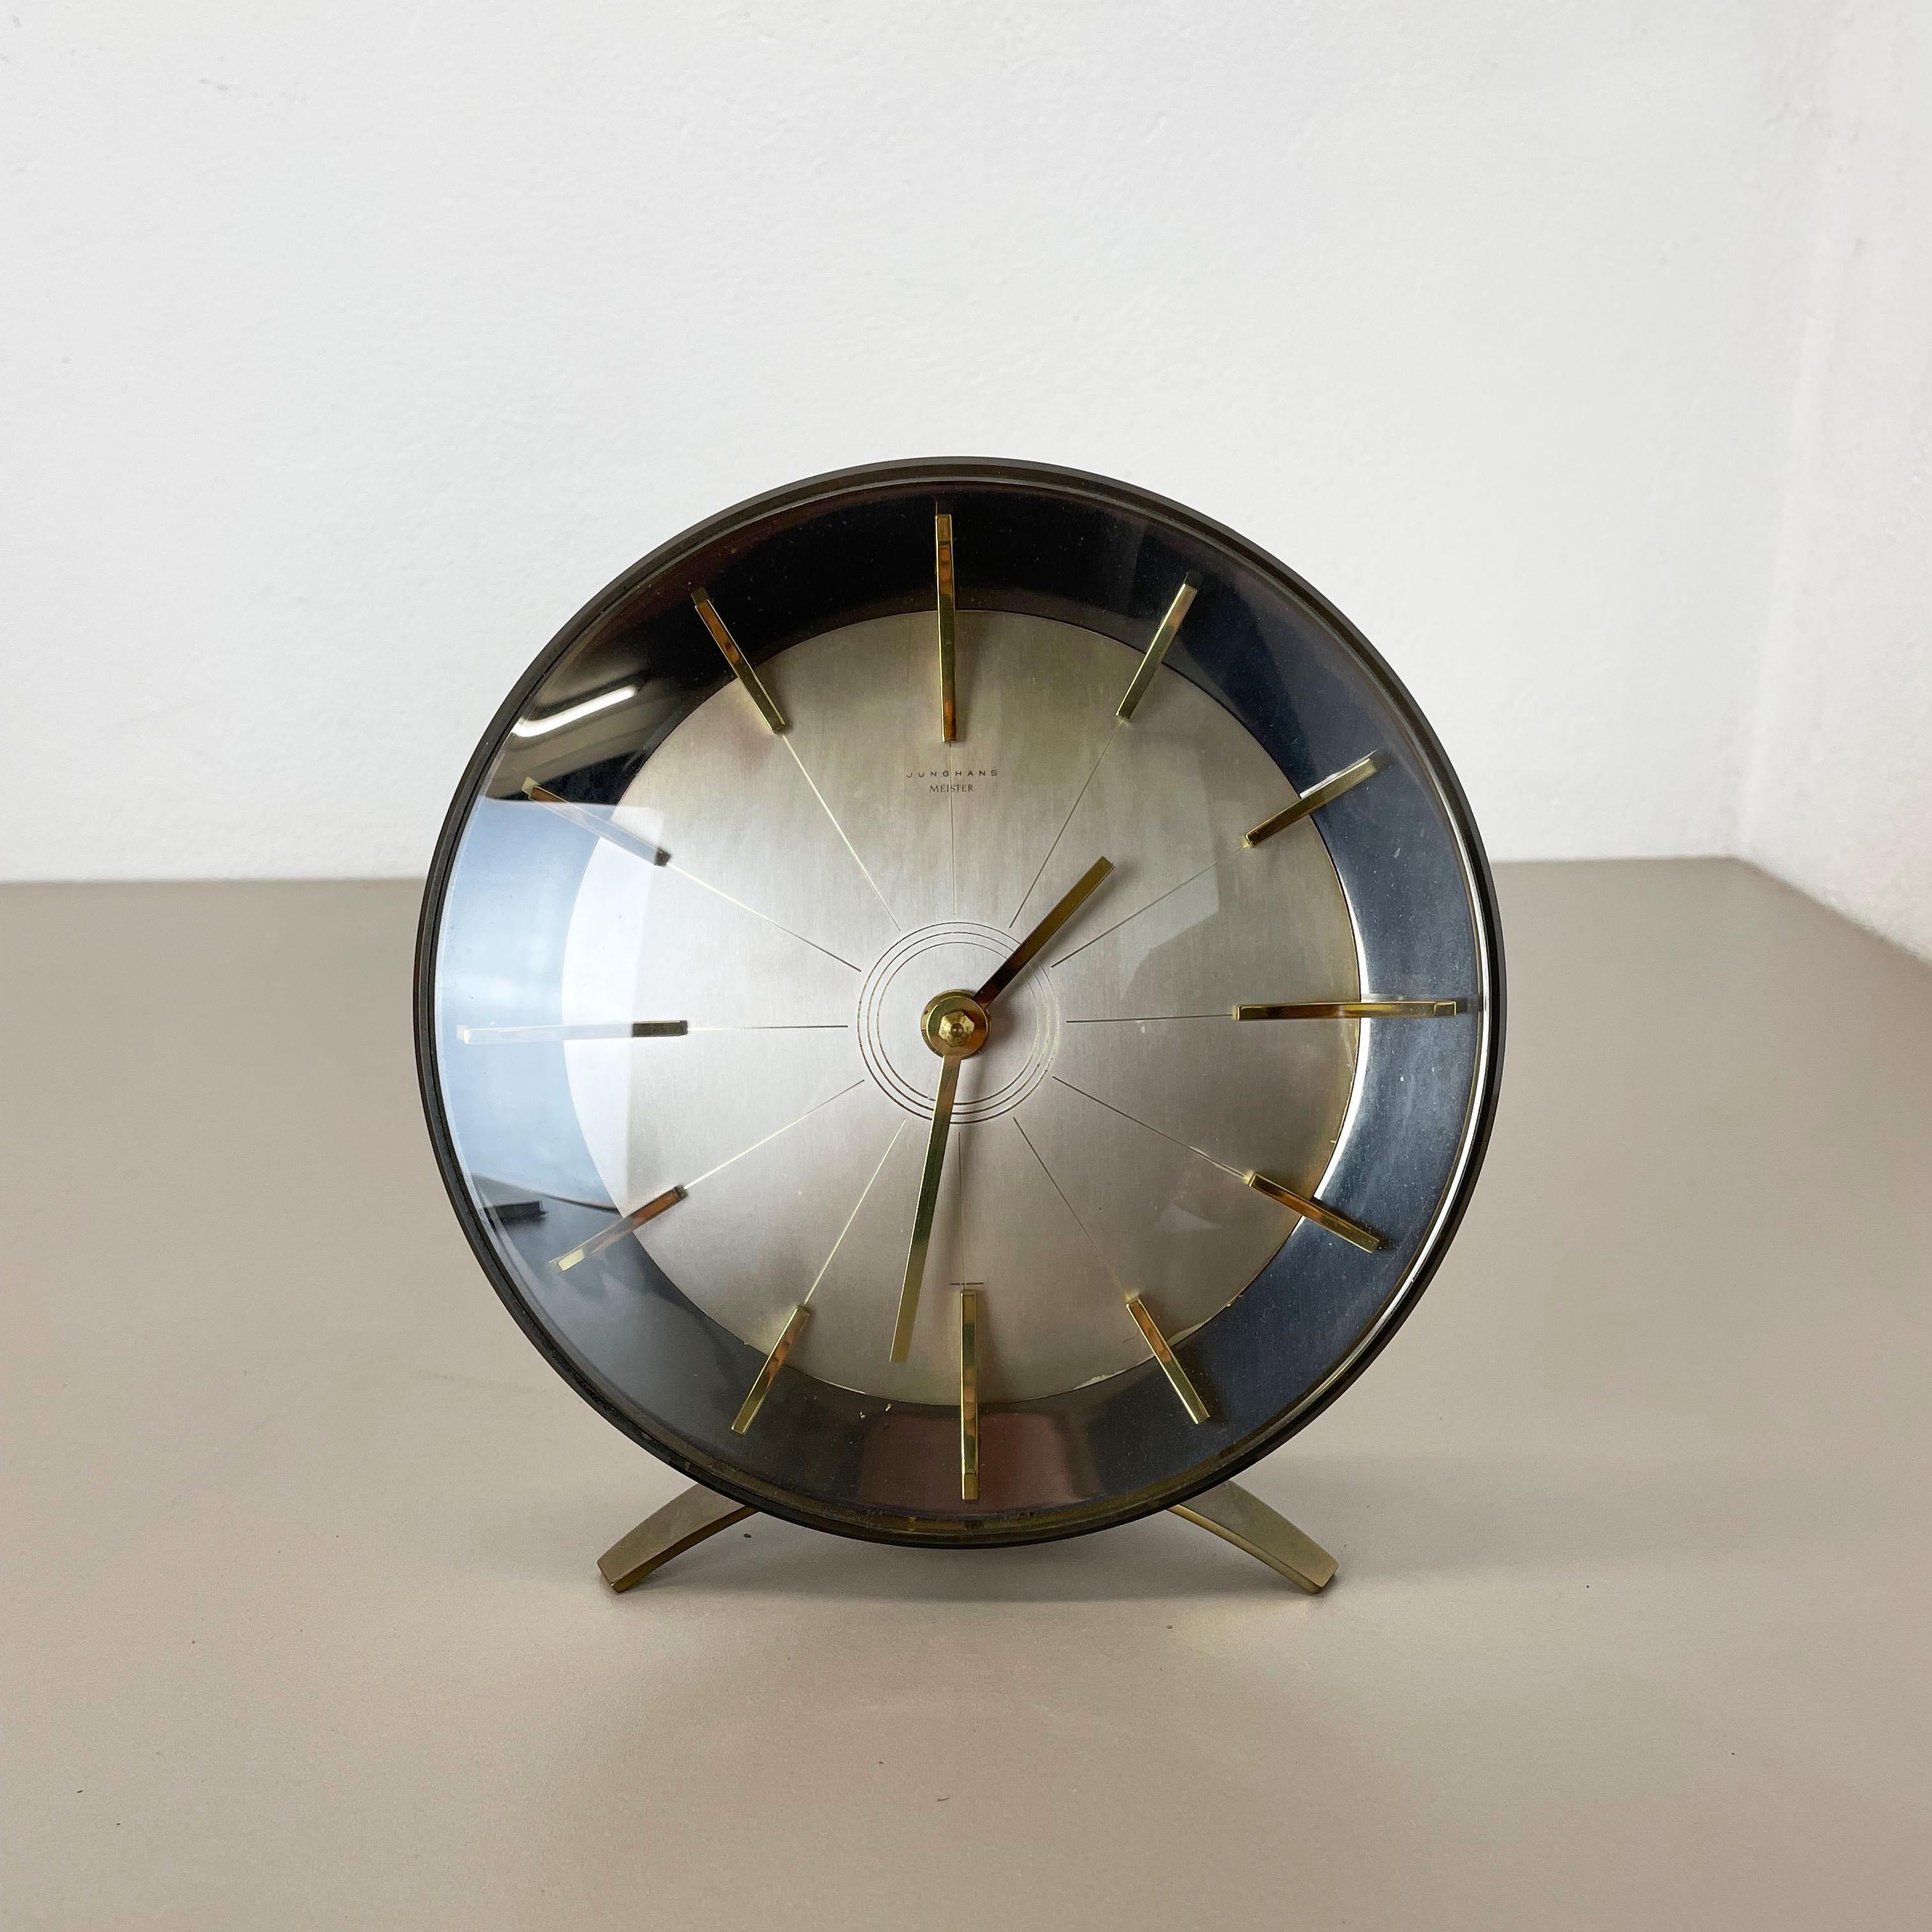 Article :

Horloge de table



Origine :

Allemagne


Producteur :

Junghans Electronic, Allemagne


Âge :

1960s



Description :

Cette horloge de table vintage originale a été produite dans les années 1960 par le fabricant